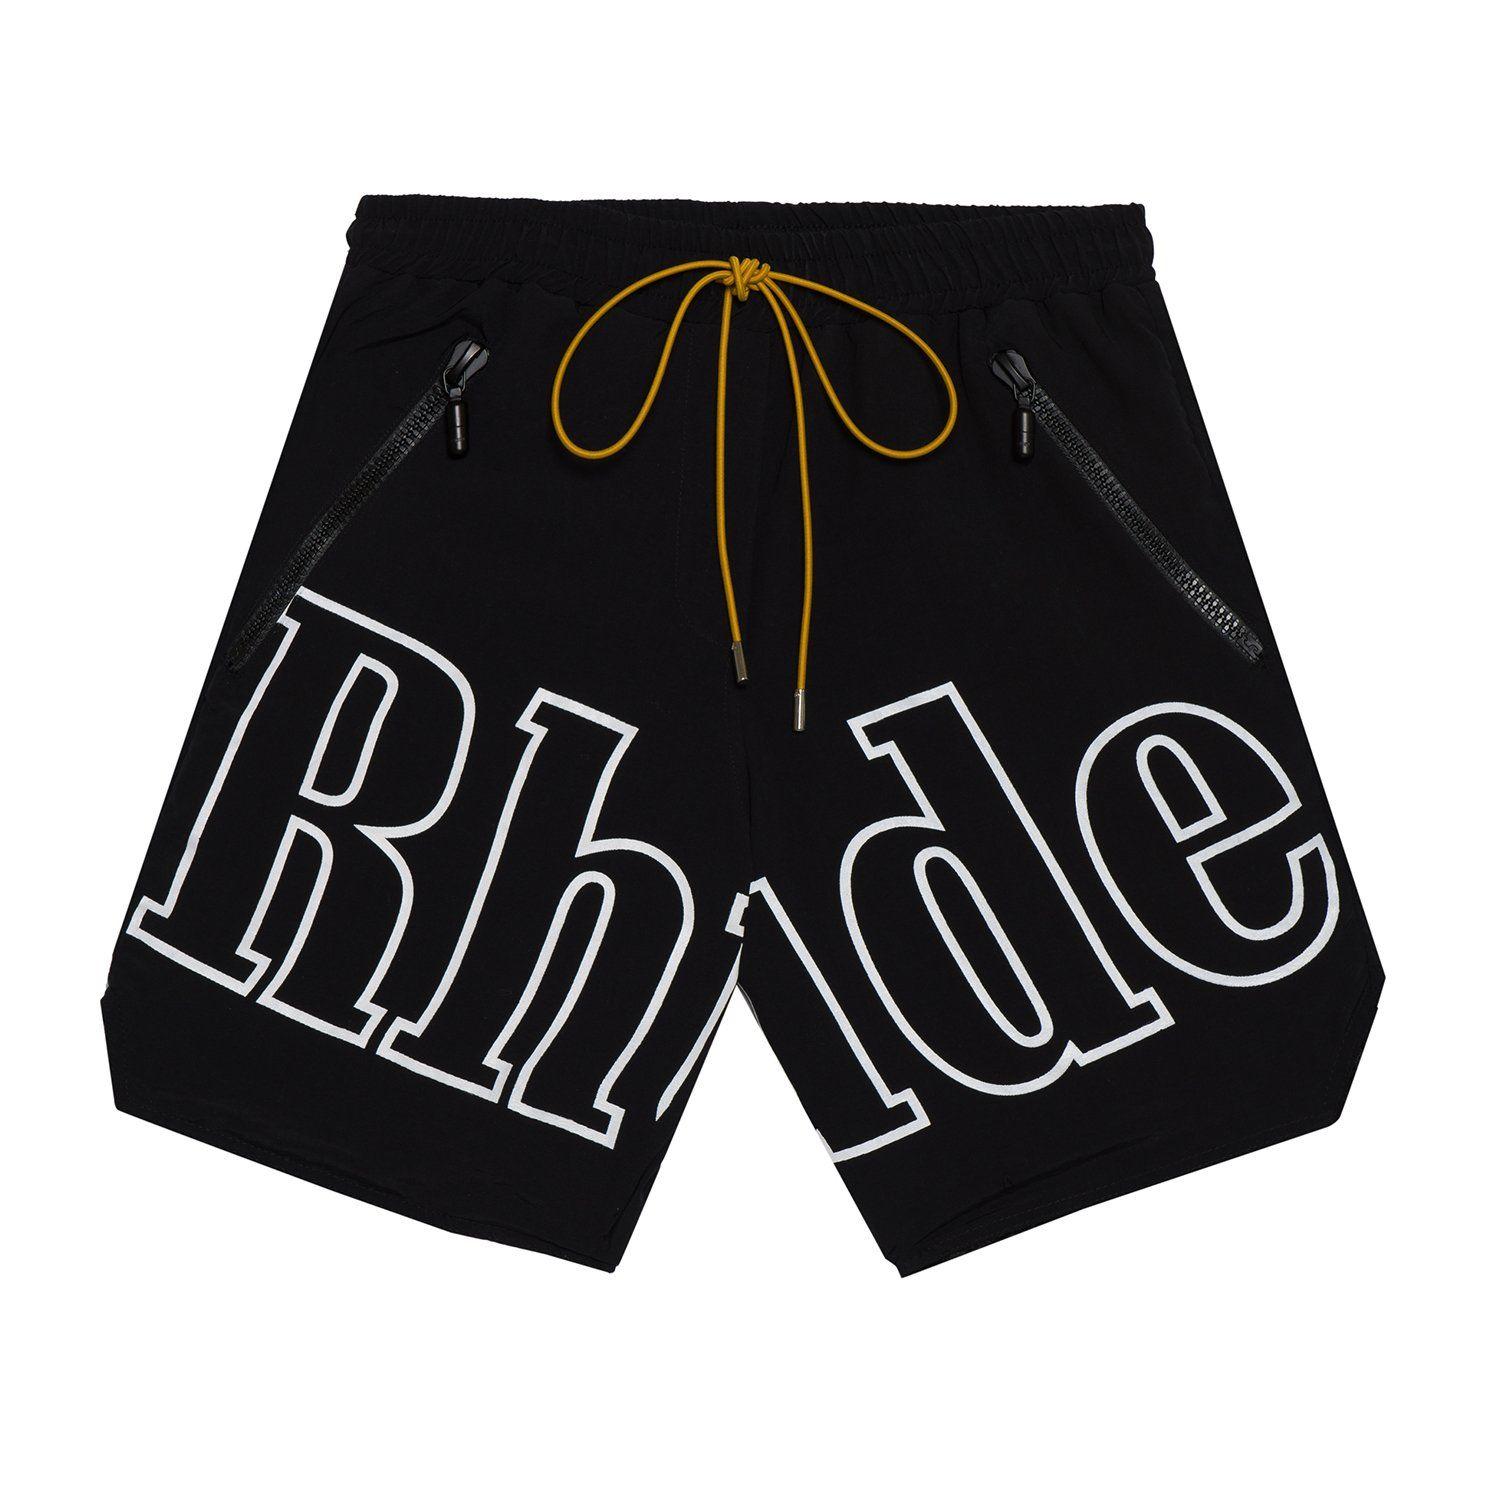 RH Logo - Rh logo swim trunk | R H U D E